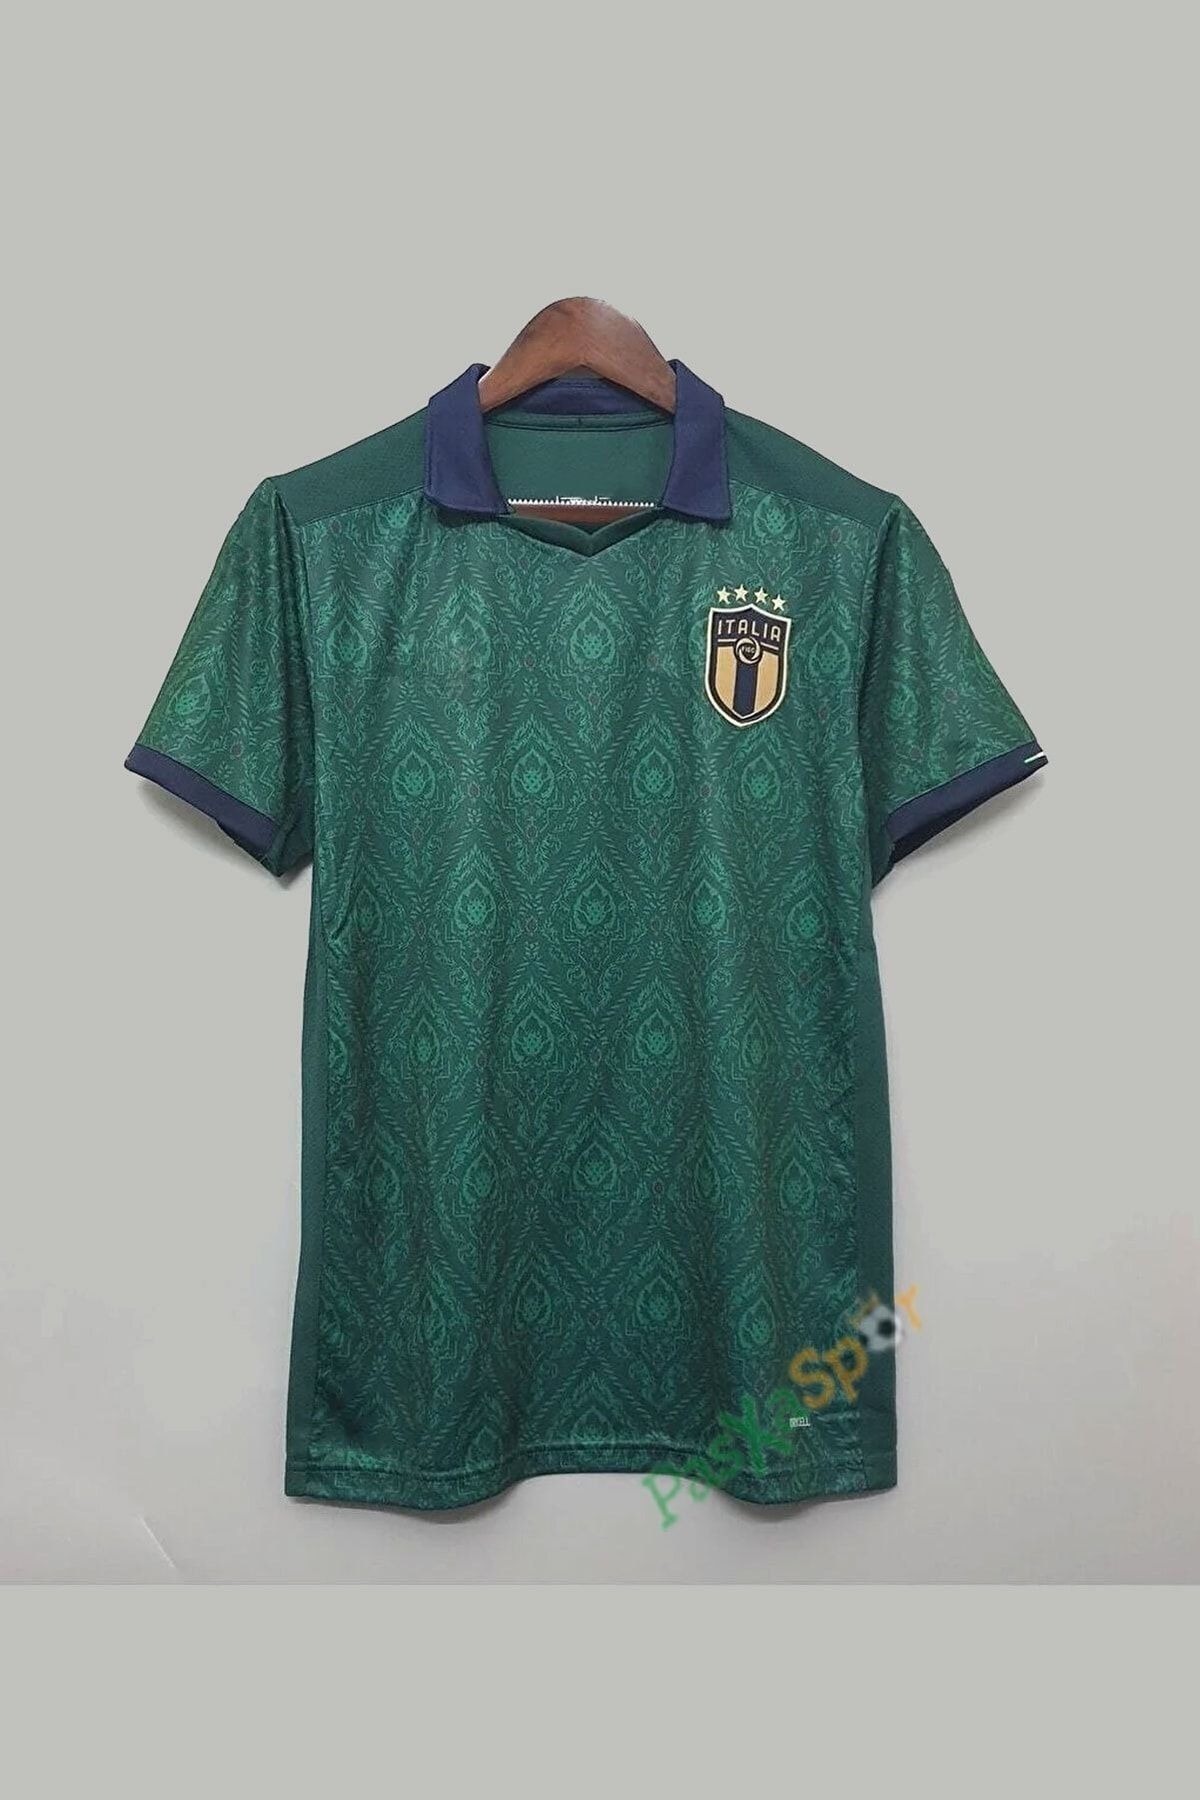 Pasxaspor Rönesans Temalı Desenli Italya Yeşil Maç Forması